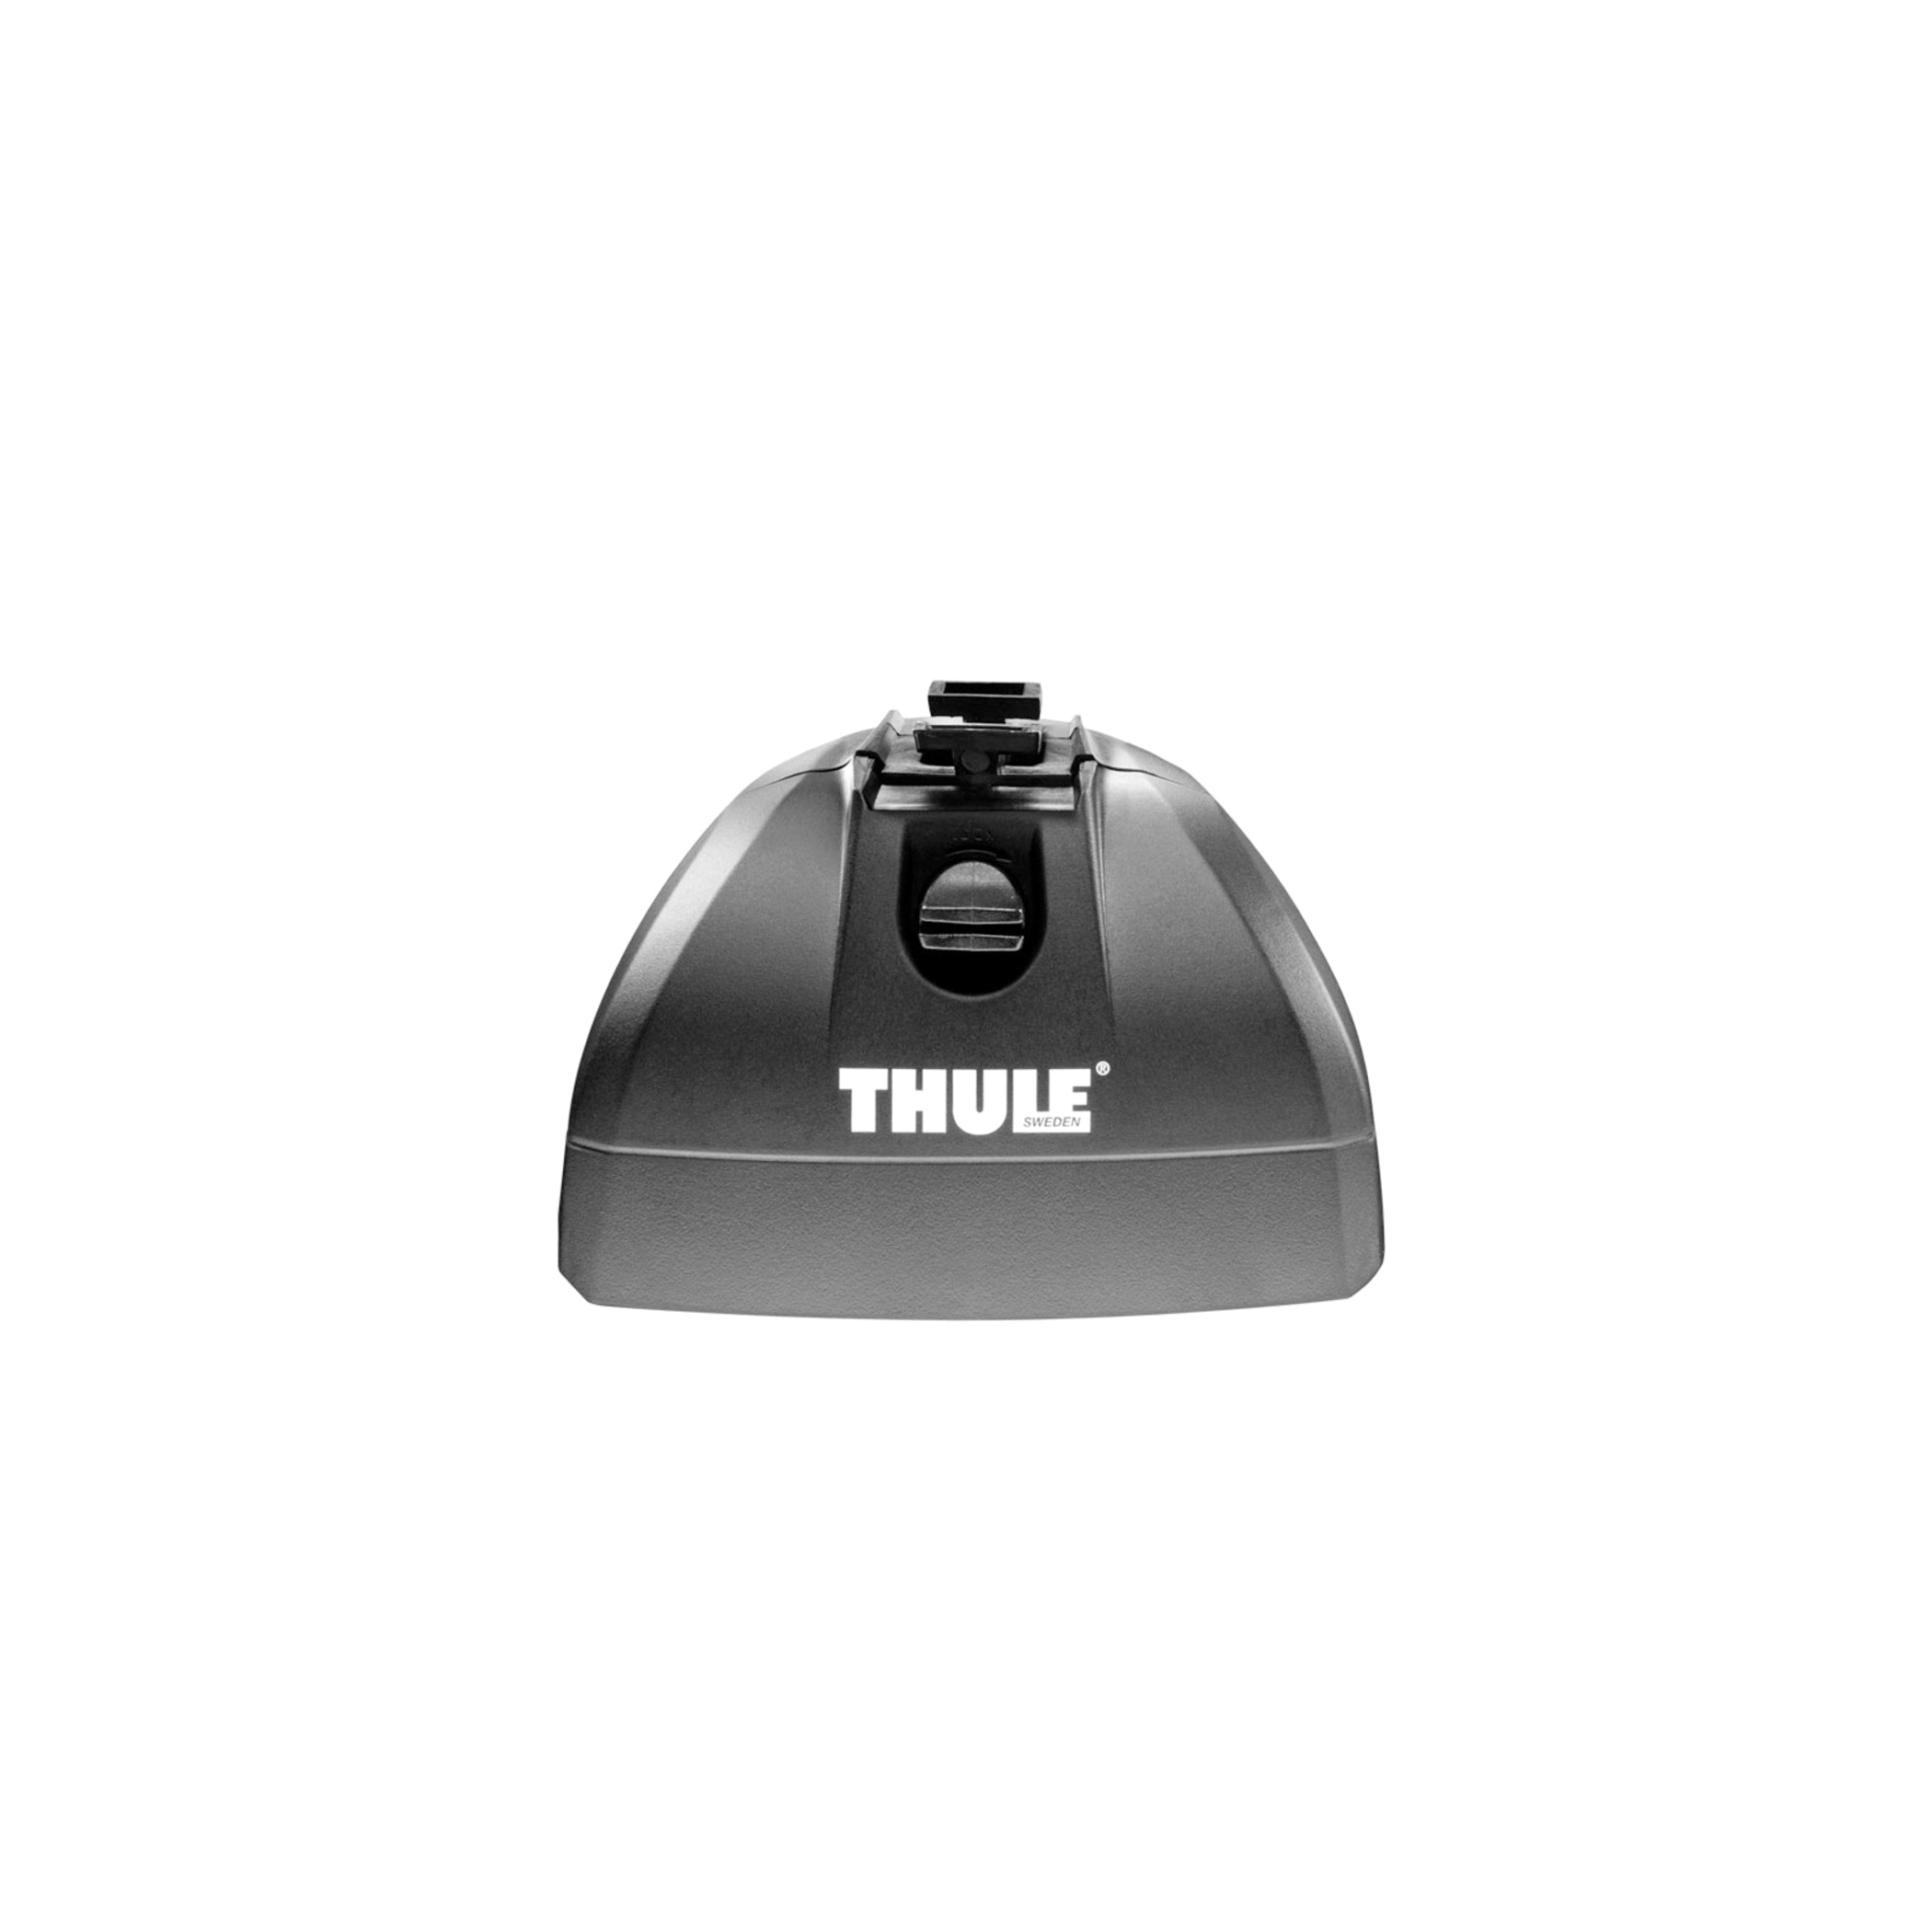 Thule 460R